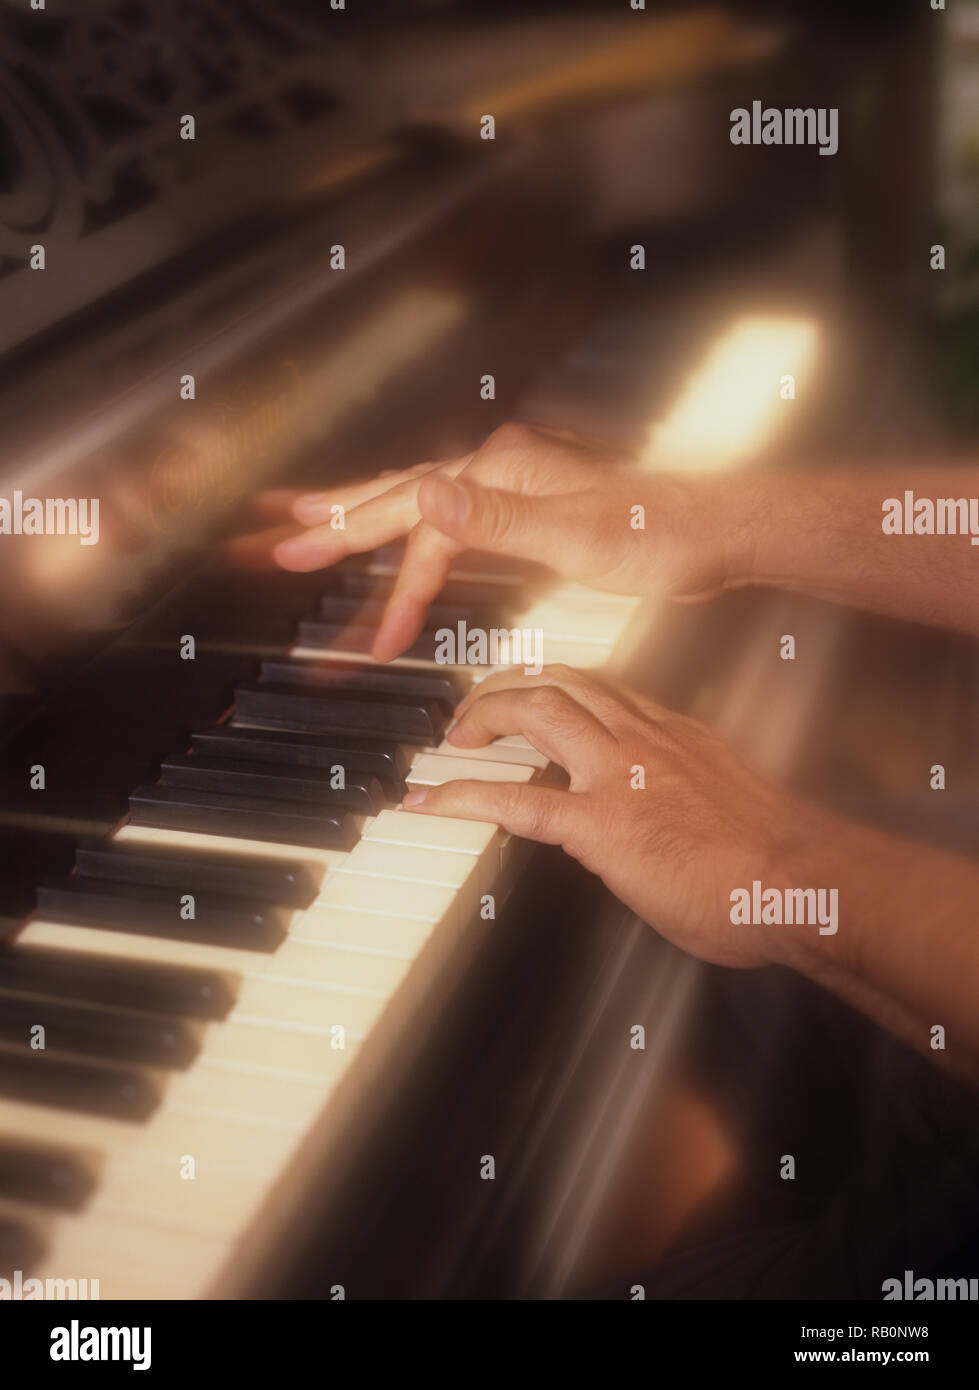 L'homme participe activement à jouer du piano avec un effet de filtre pour souligner l'appuyant sur des touches de piano en temps réel Banque D'Images